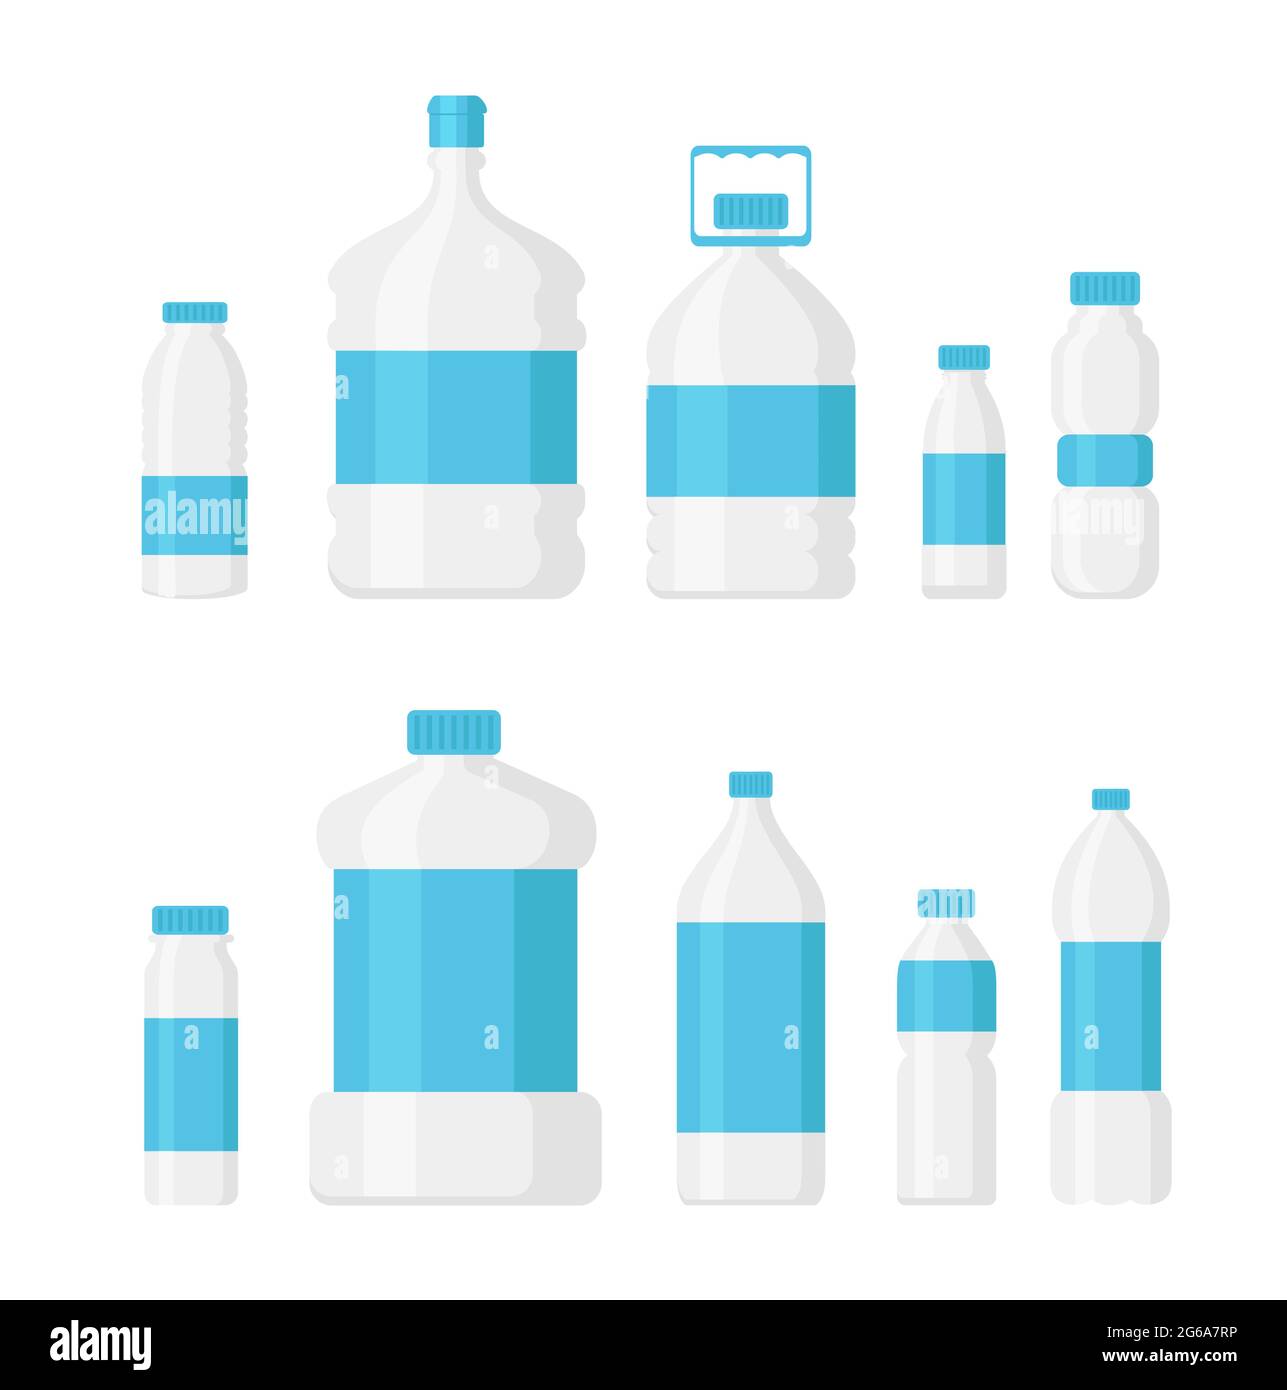 Bottiglia piena d'acqua immagini e fotografie stock ad alta risoluzione -  Pagina 7 - Alamy